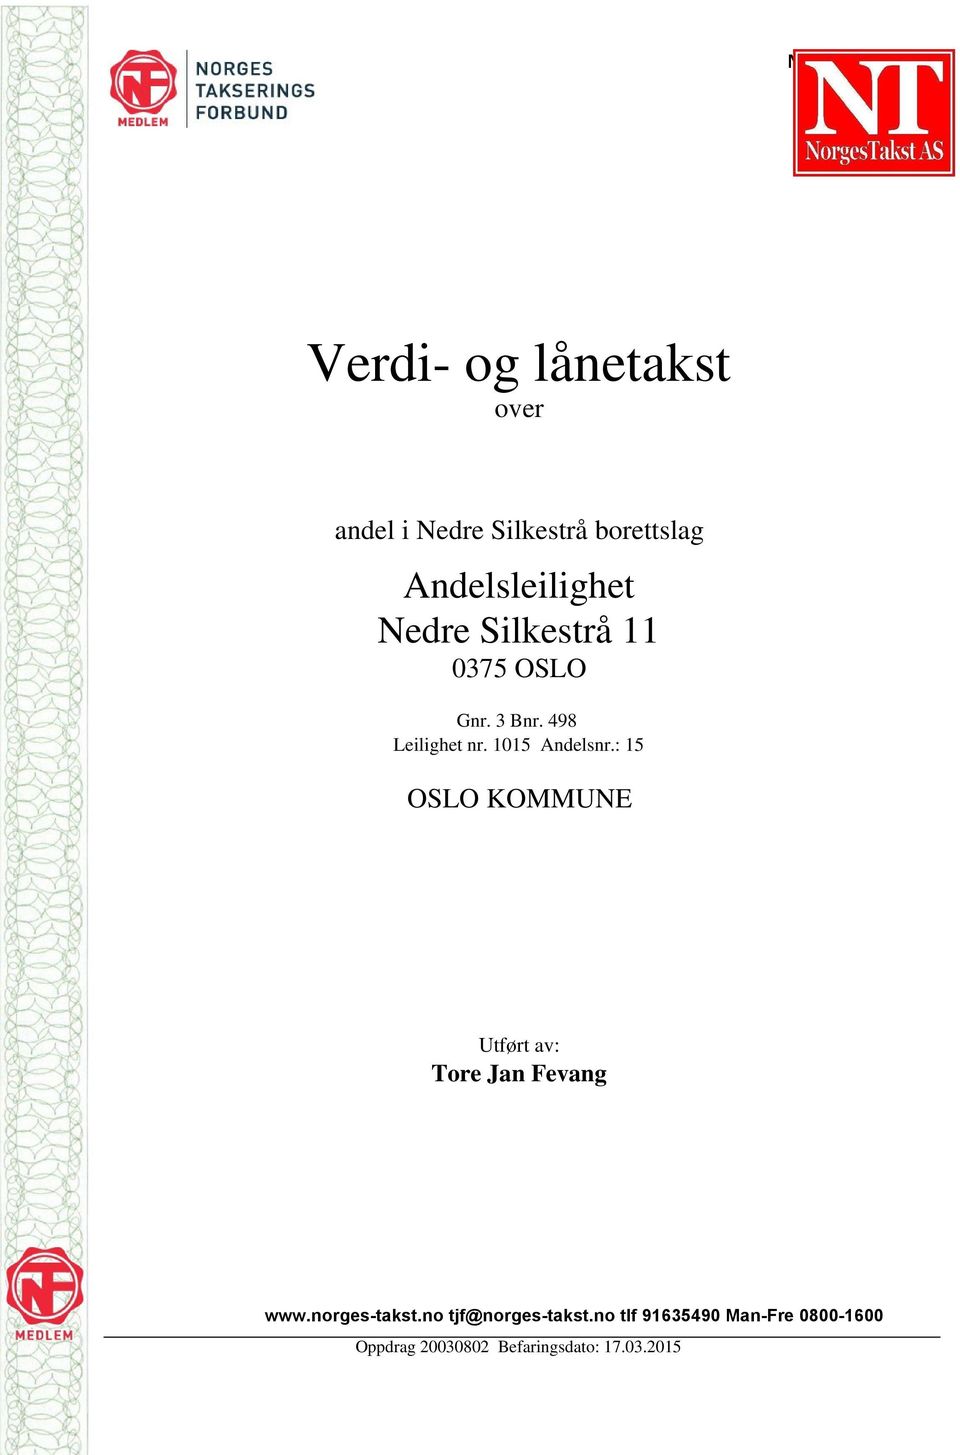 1015 Andelsnr.: 15 OSLO KOMMUNE Utført av: Tore Jan Fevang www.norges-takst.